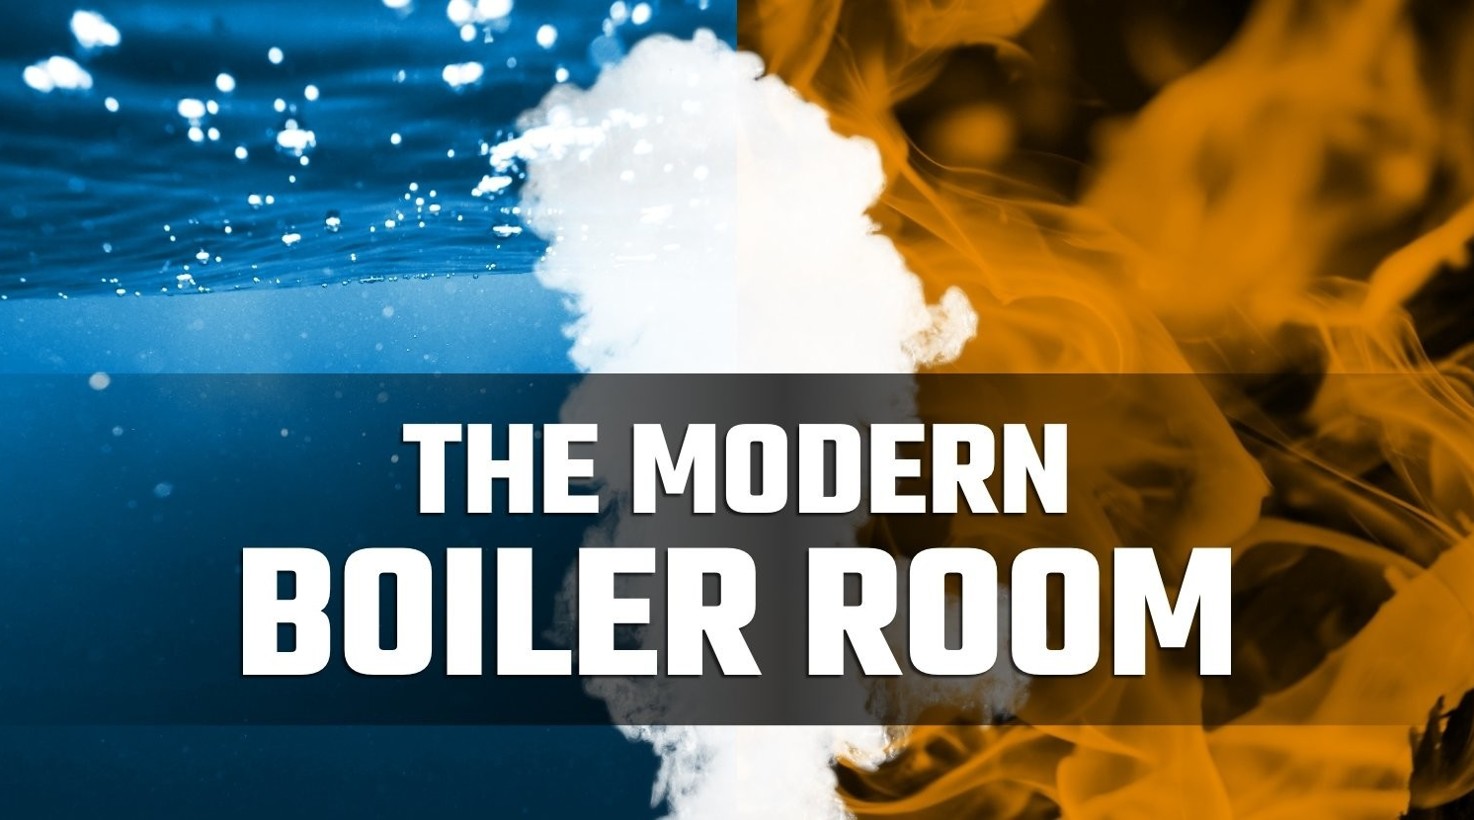 The Modern Boiler Room